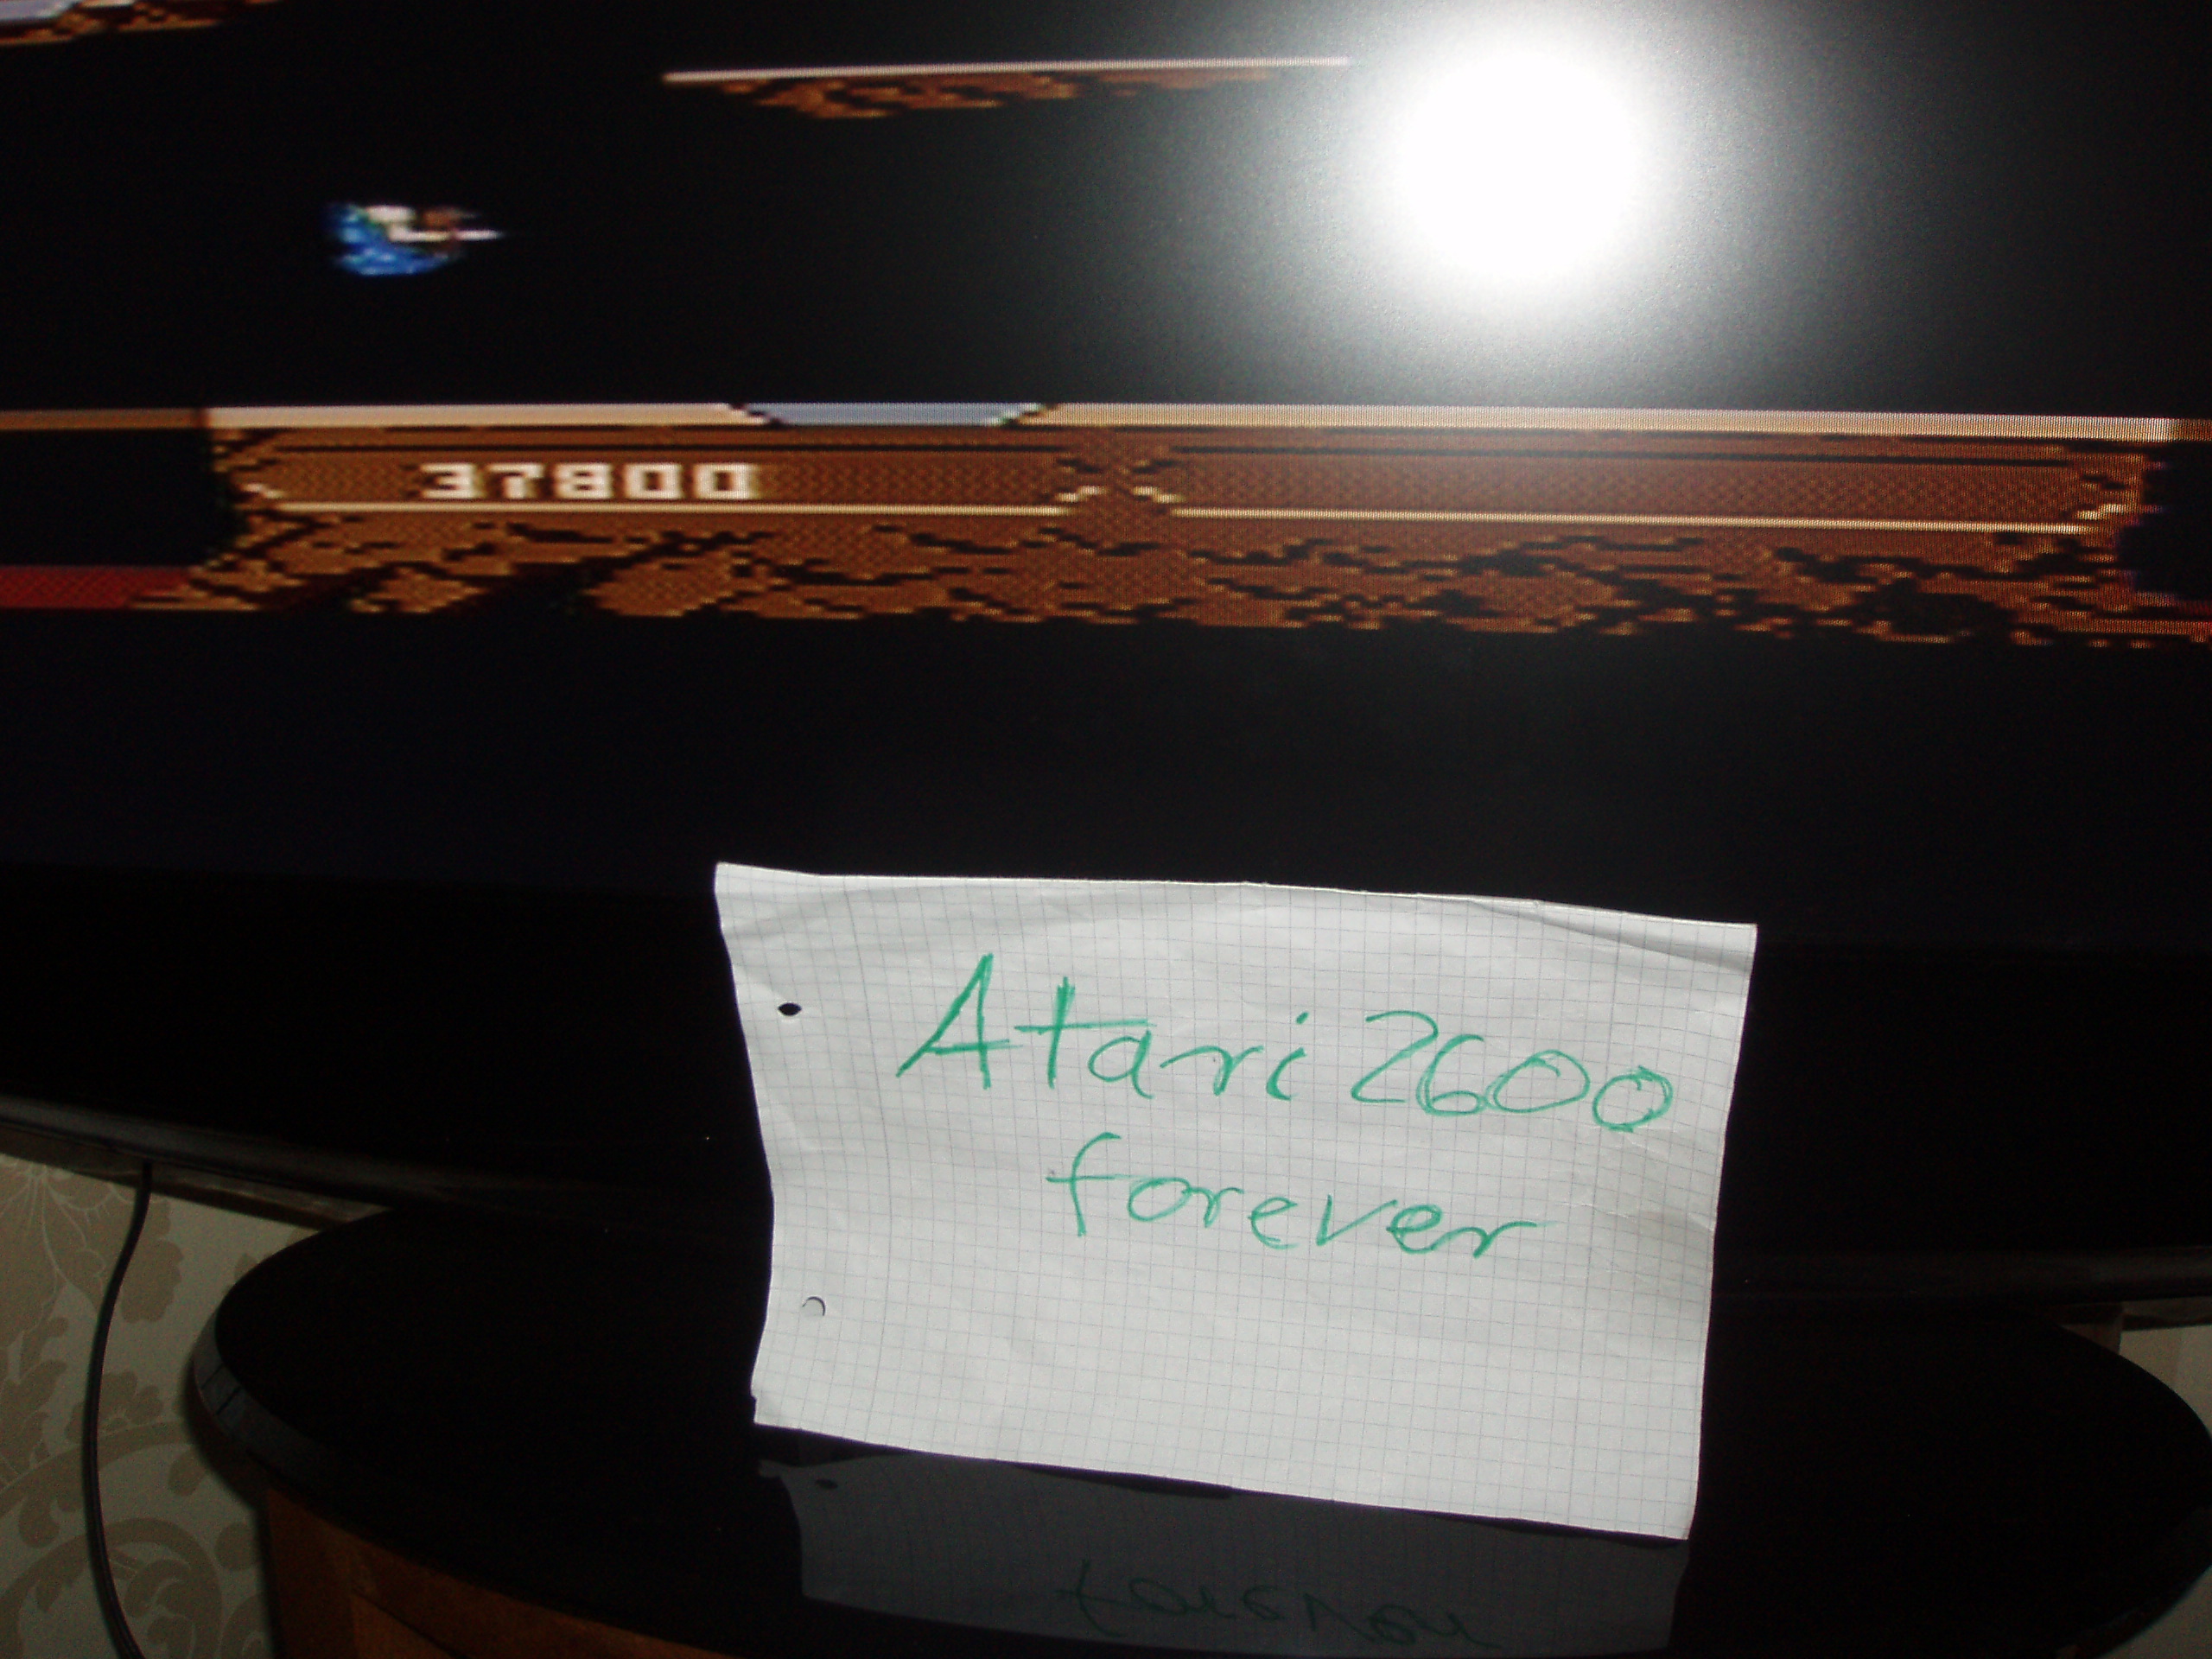 atari2600forever: Joust: Beginner (Atari 7800) 37,800 points on 2017-04-22 04:04:05